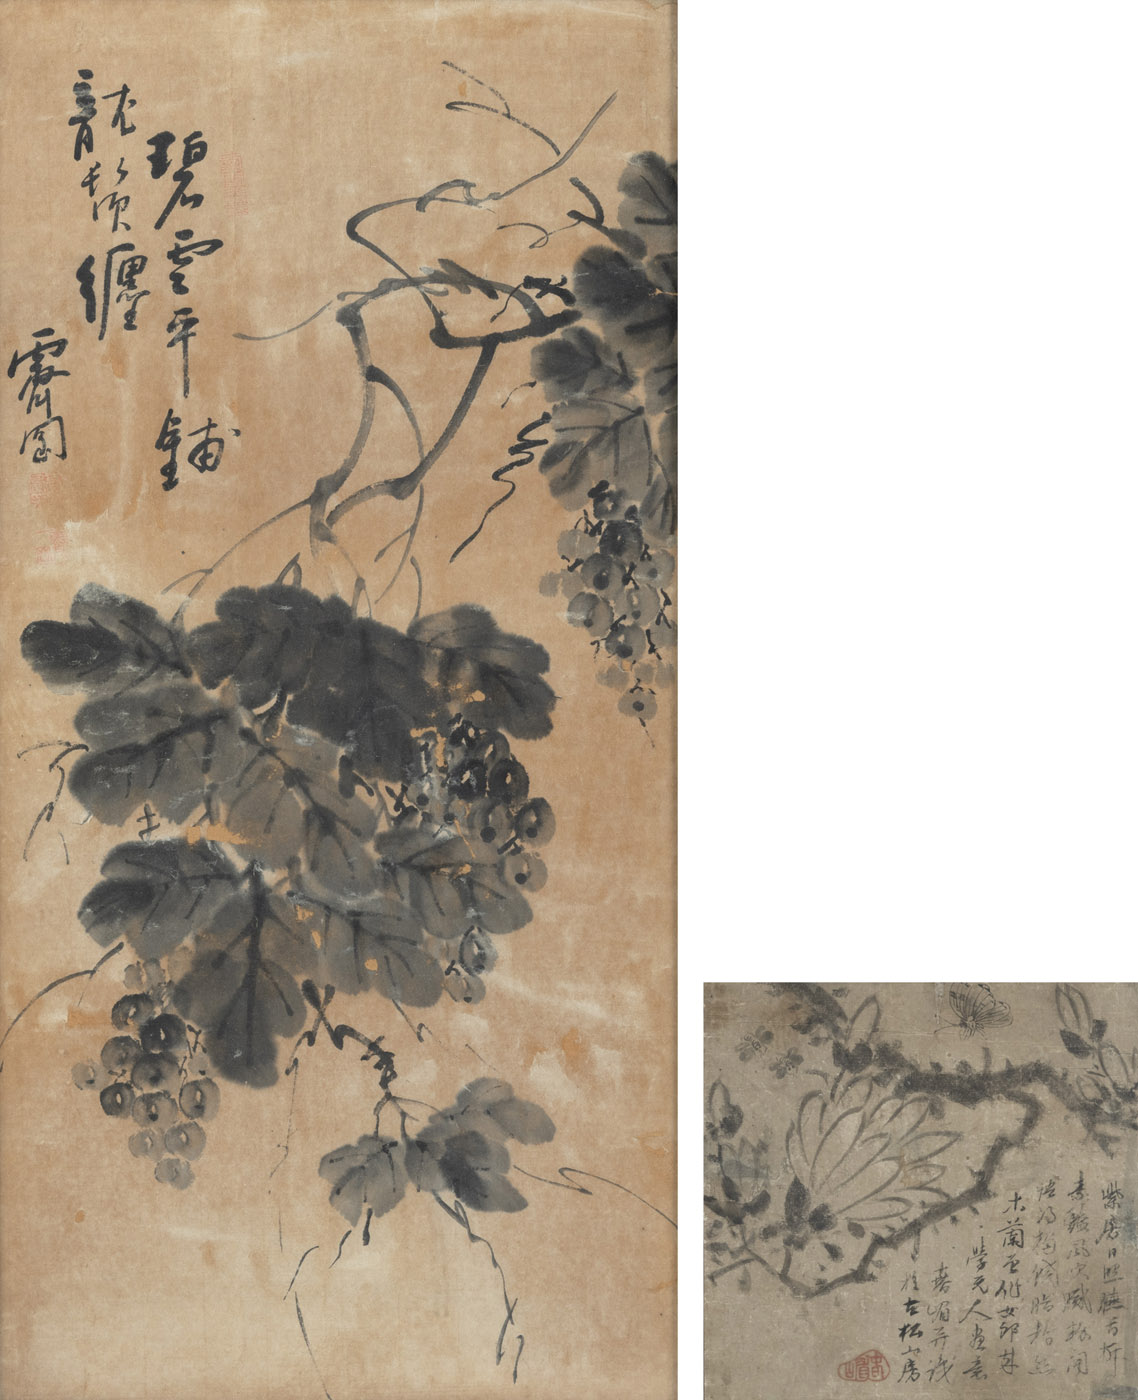 <b>Zwei Tuschmalereien auf Papier: Trauben und Magnolie mit Schmetterling</b>